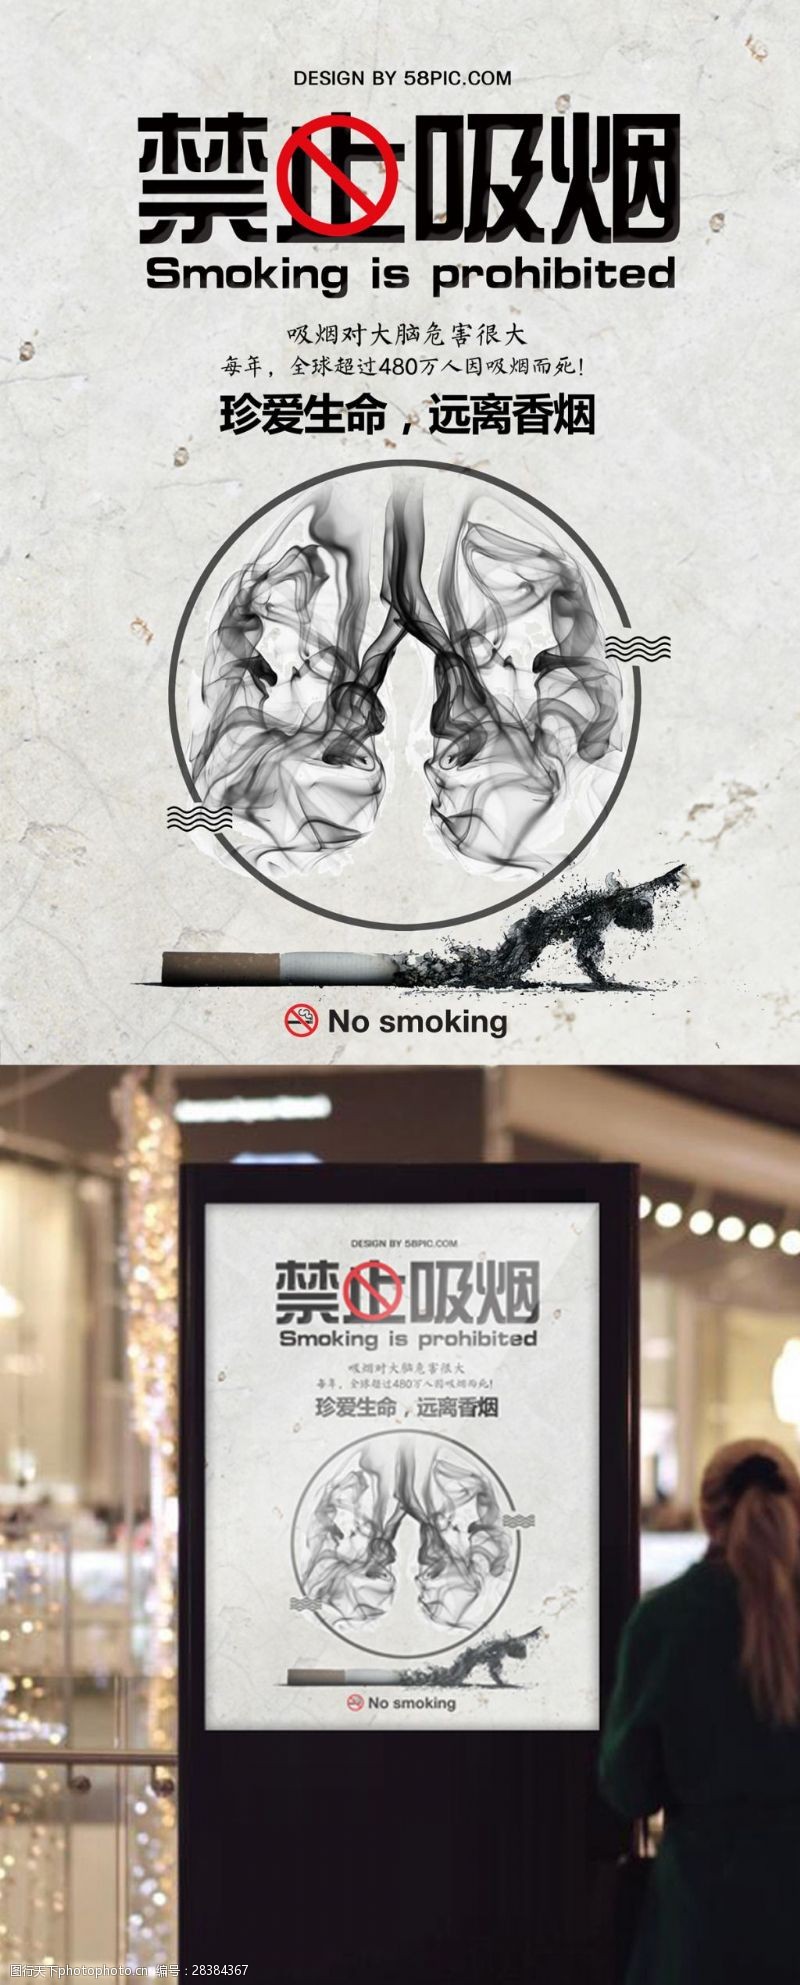 吸烟危害健康禁止吸烟公益宣传海报